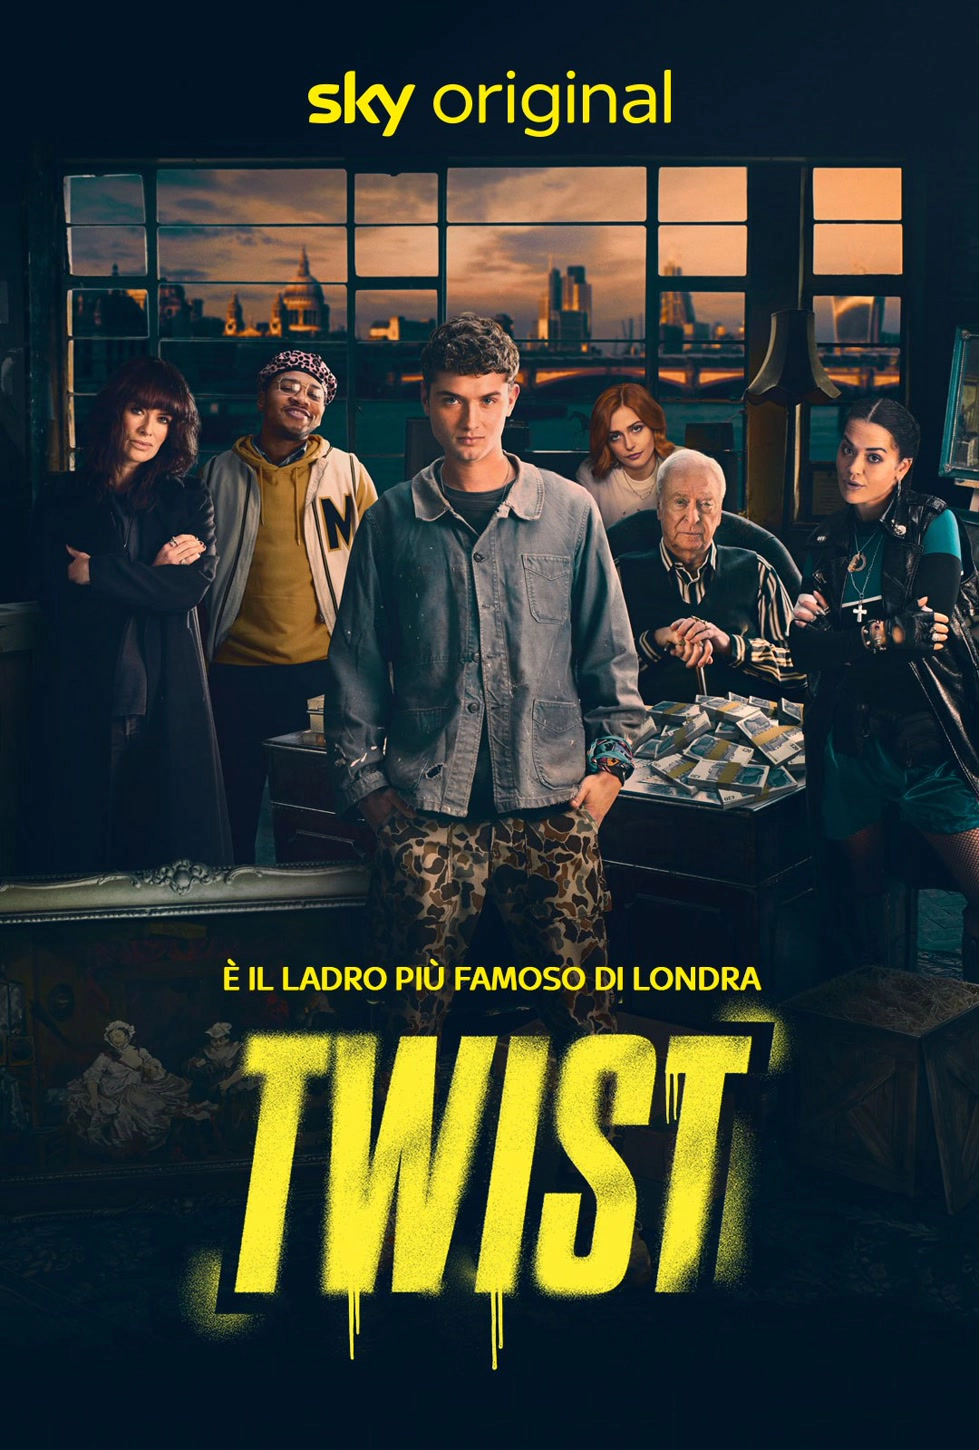 Twist [HD] (2021)